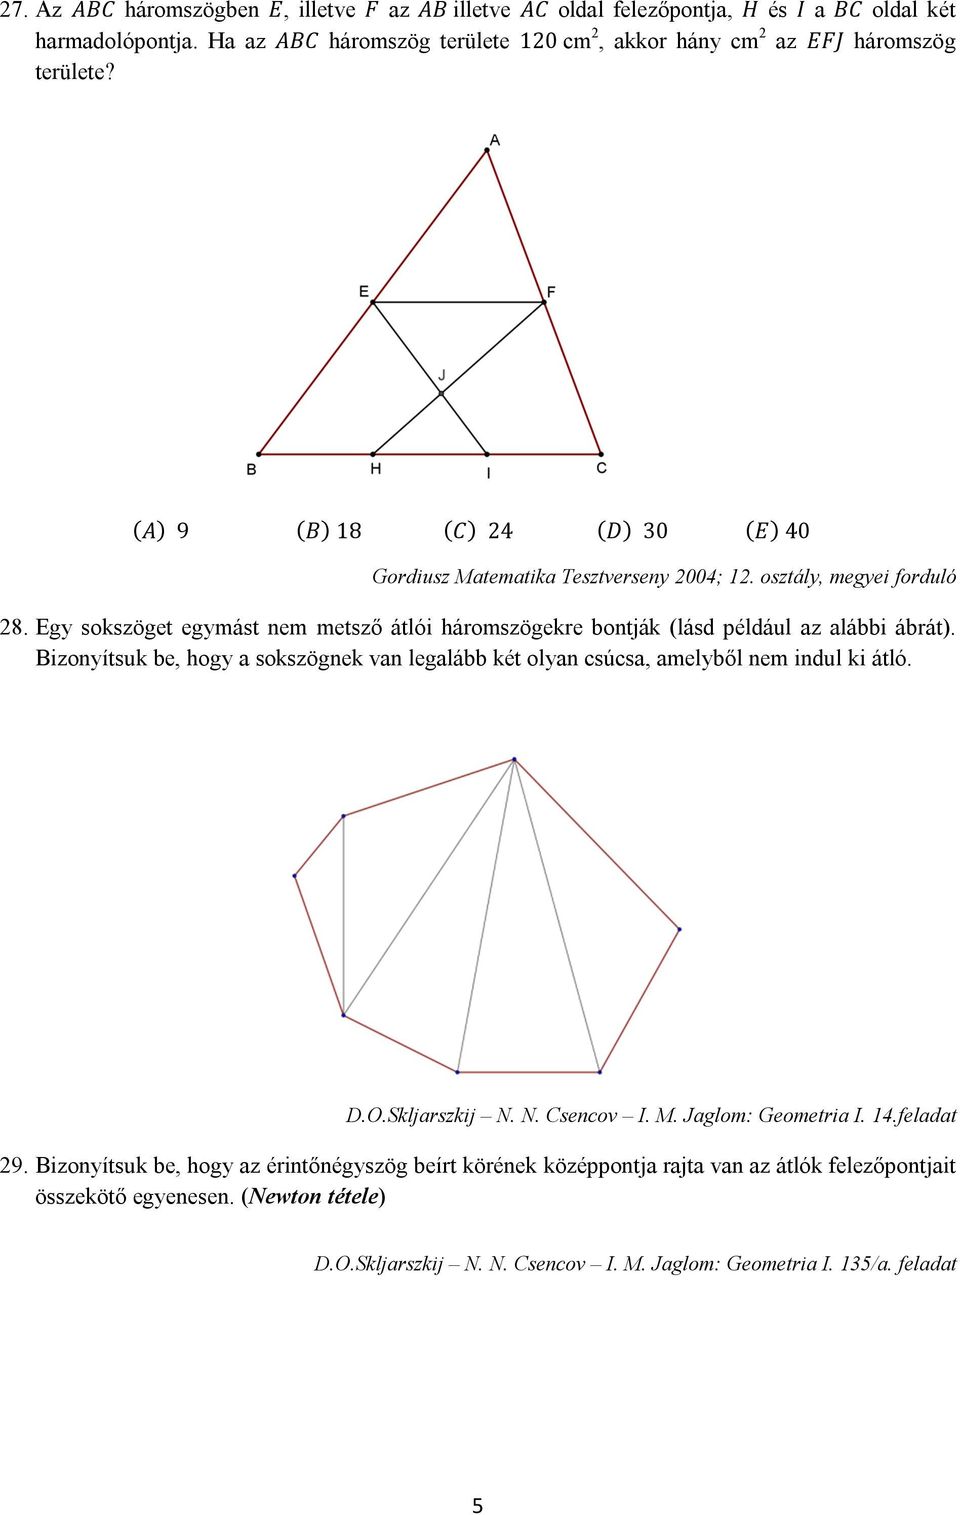 3. Geometria. I. Feladatok - PDF Free Download